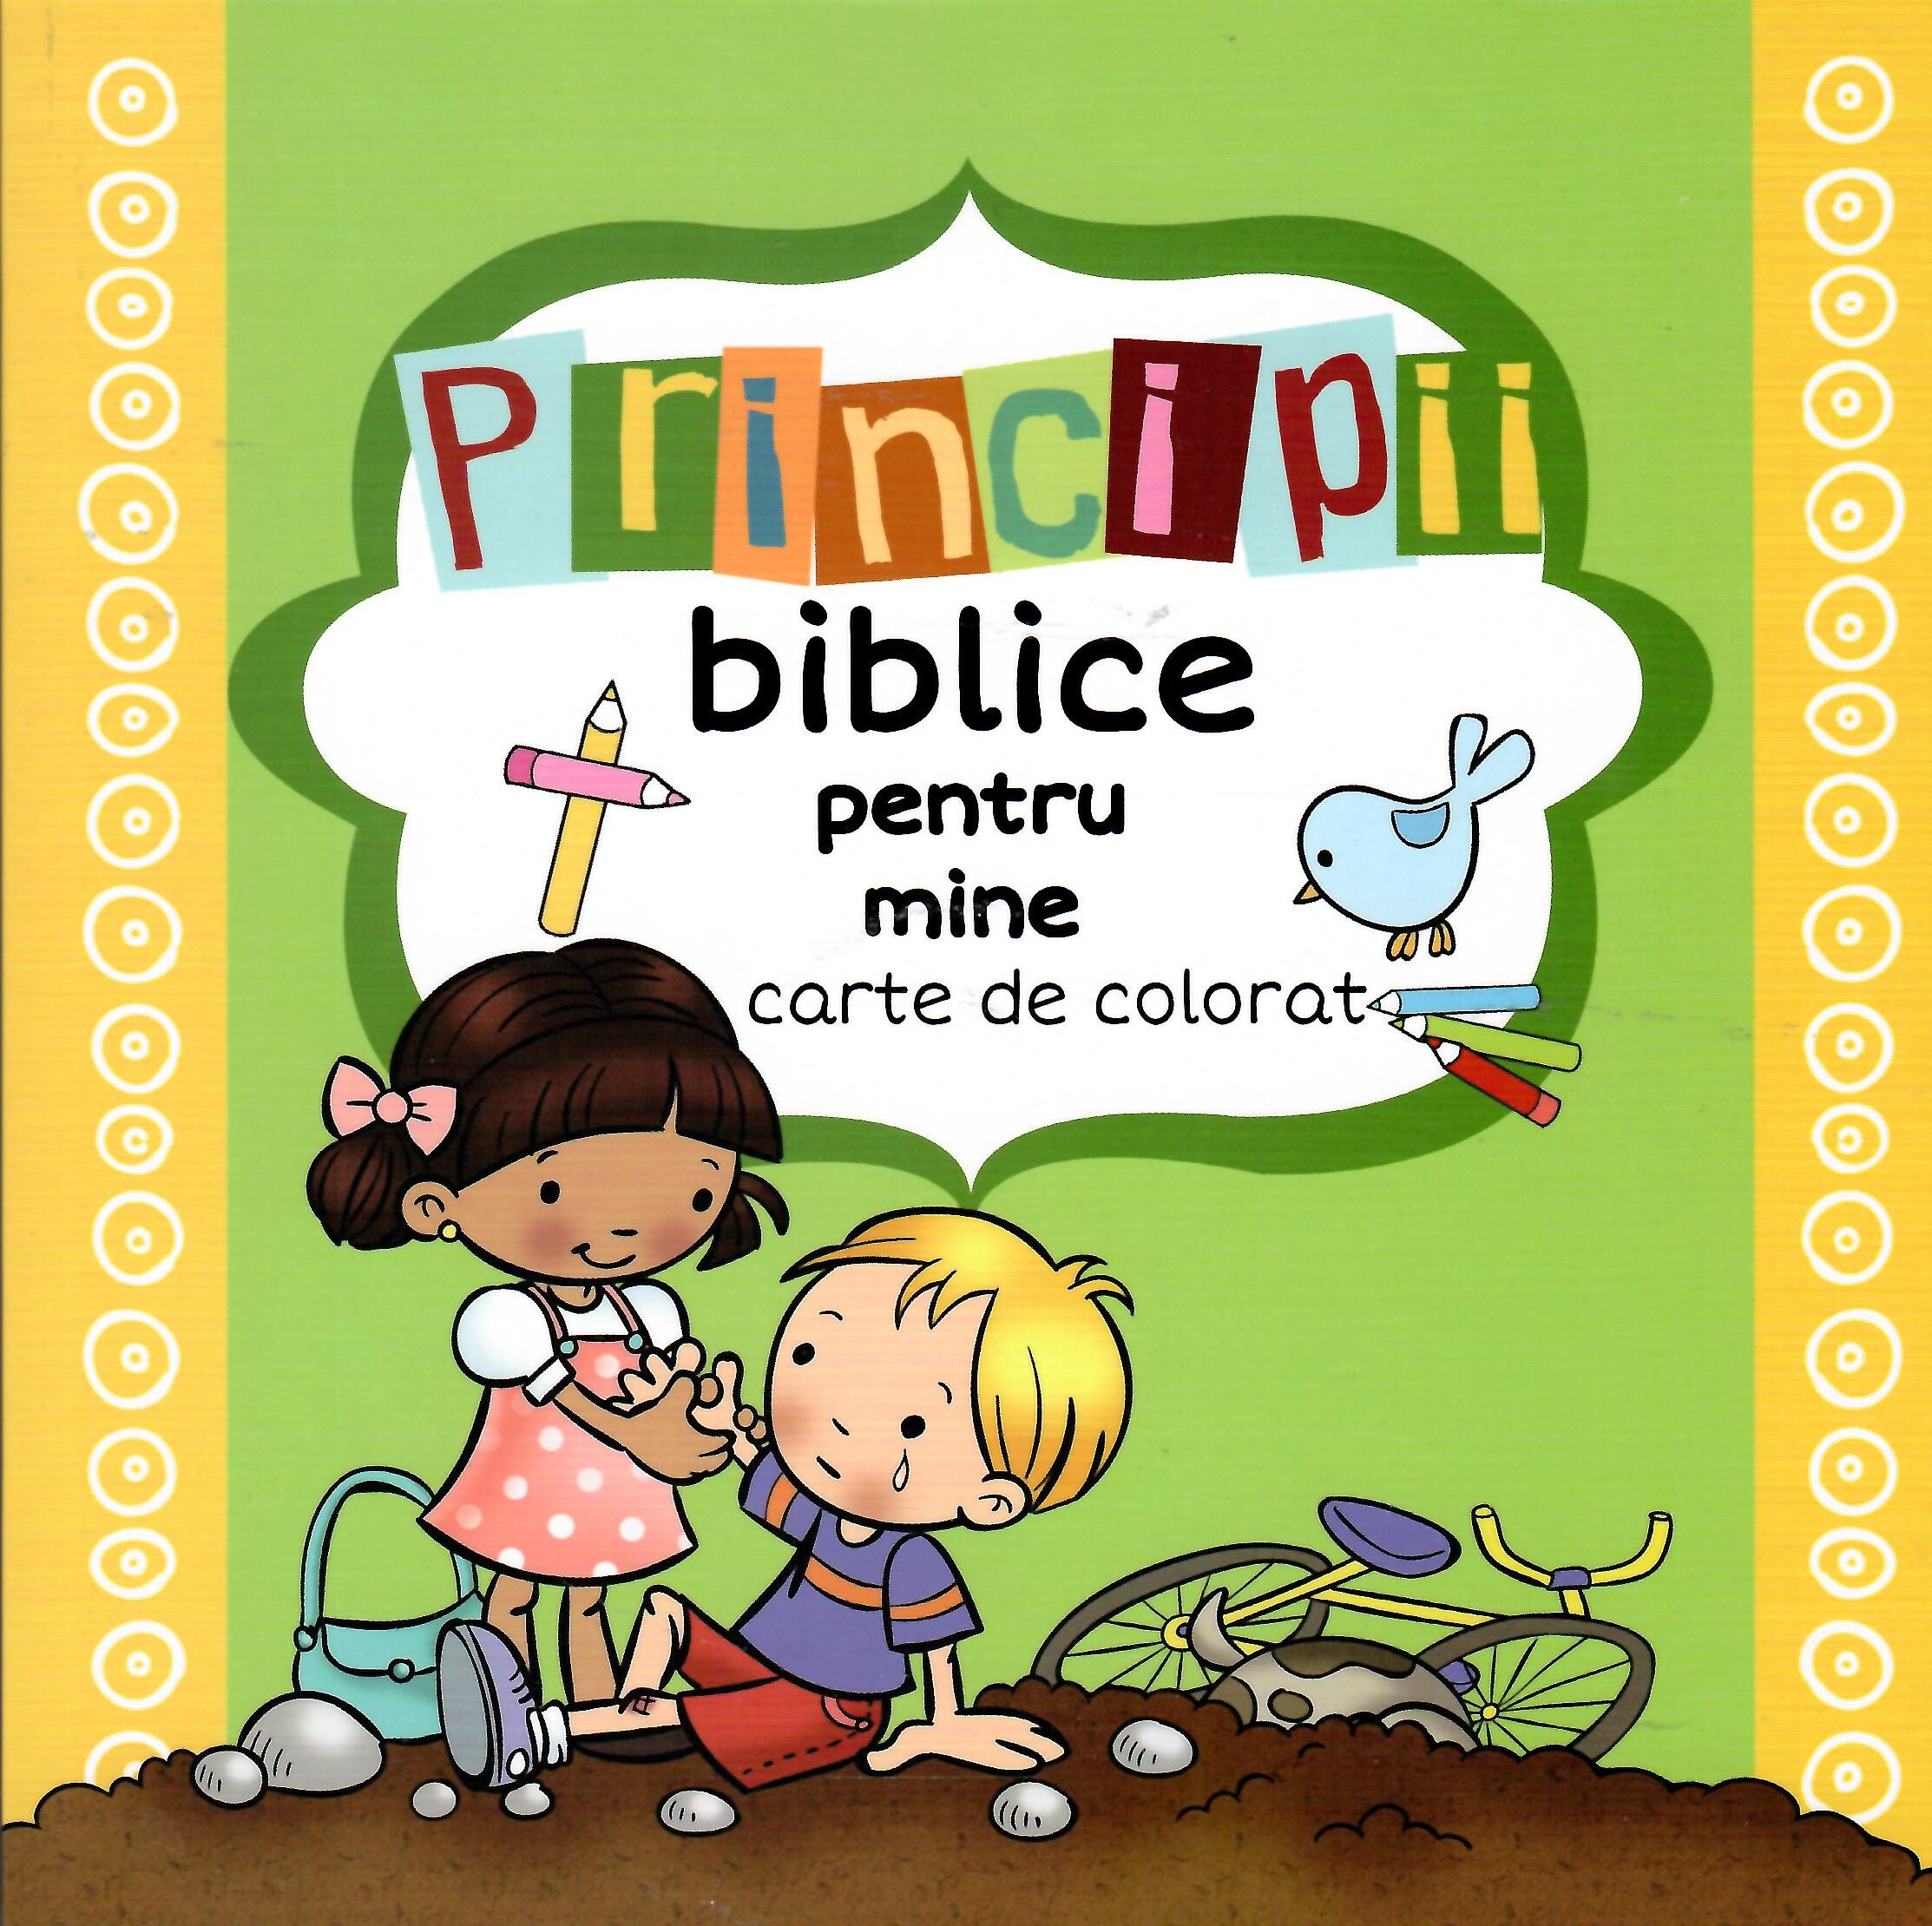 Principii biblice pentru mine - carte de colorat